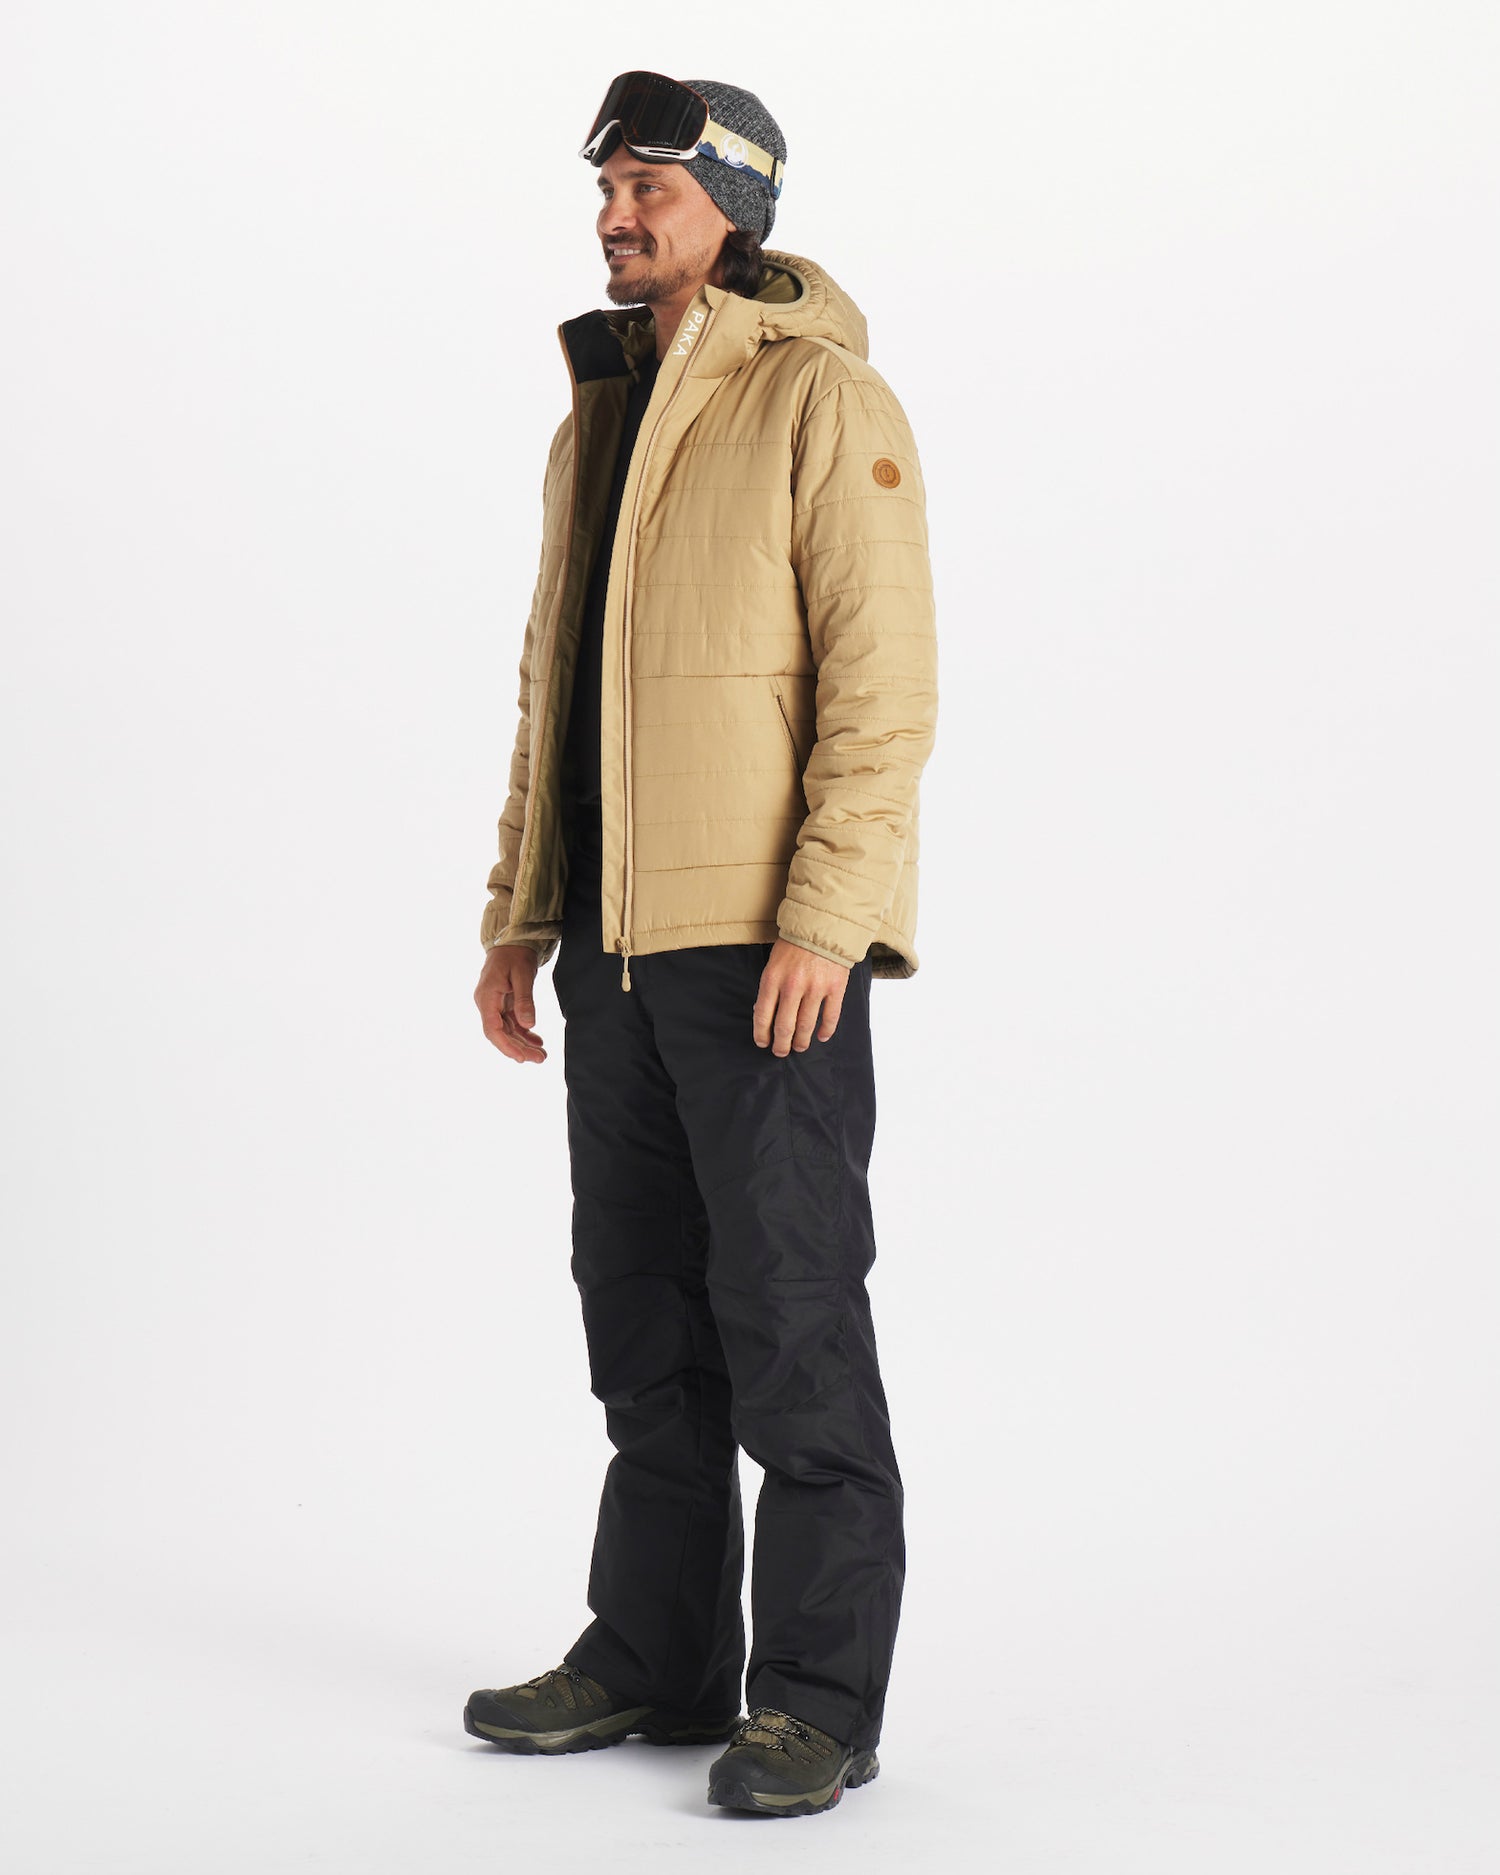 abstract Ontdekking Discriminatie op grond van geslacht Men's lightweight puffer jacket with PAKAFILL® insulation – PAKA®